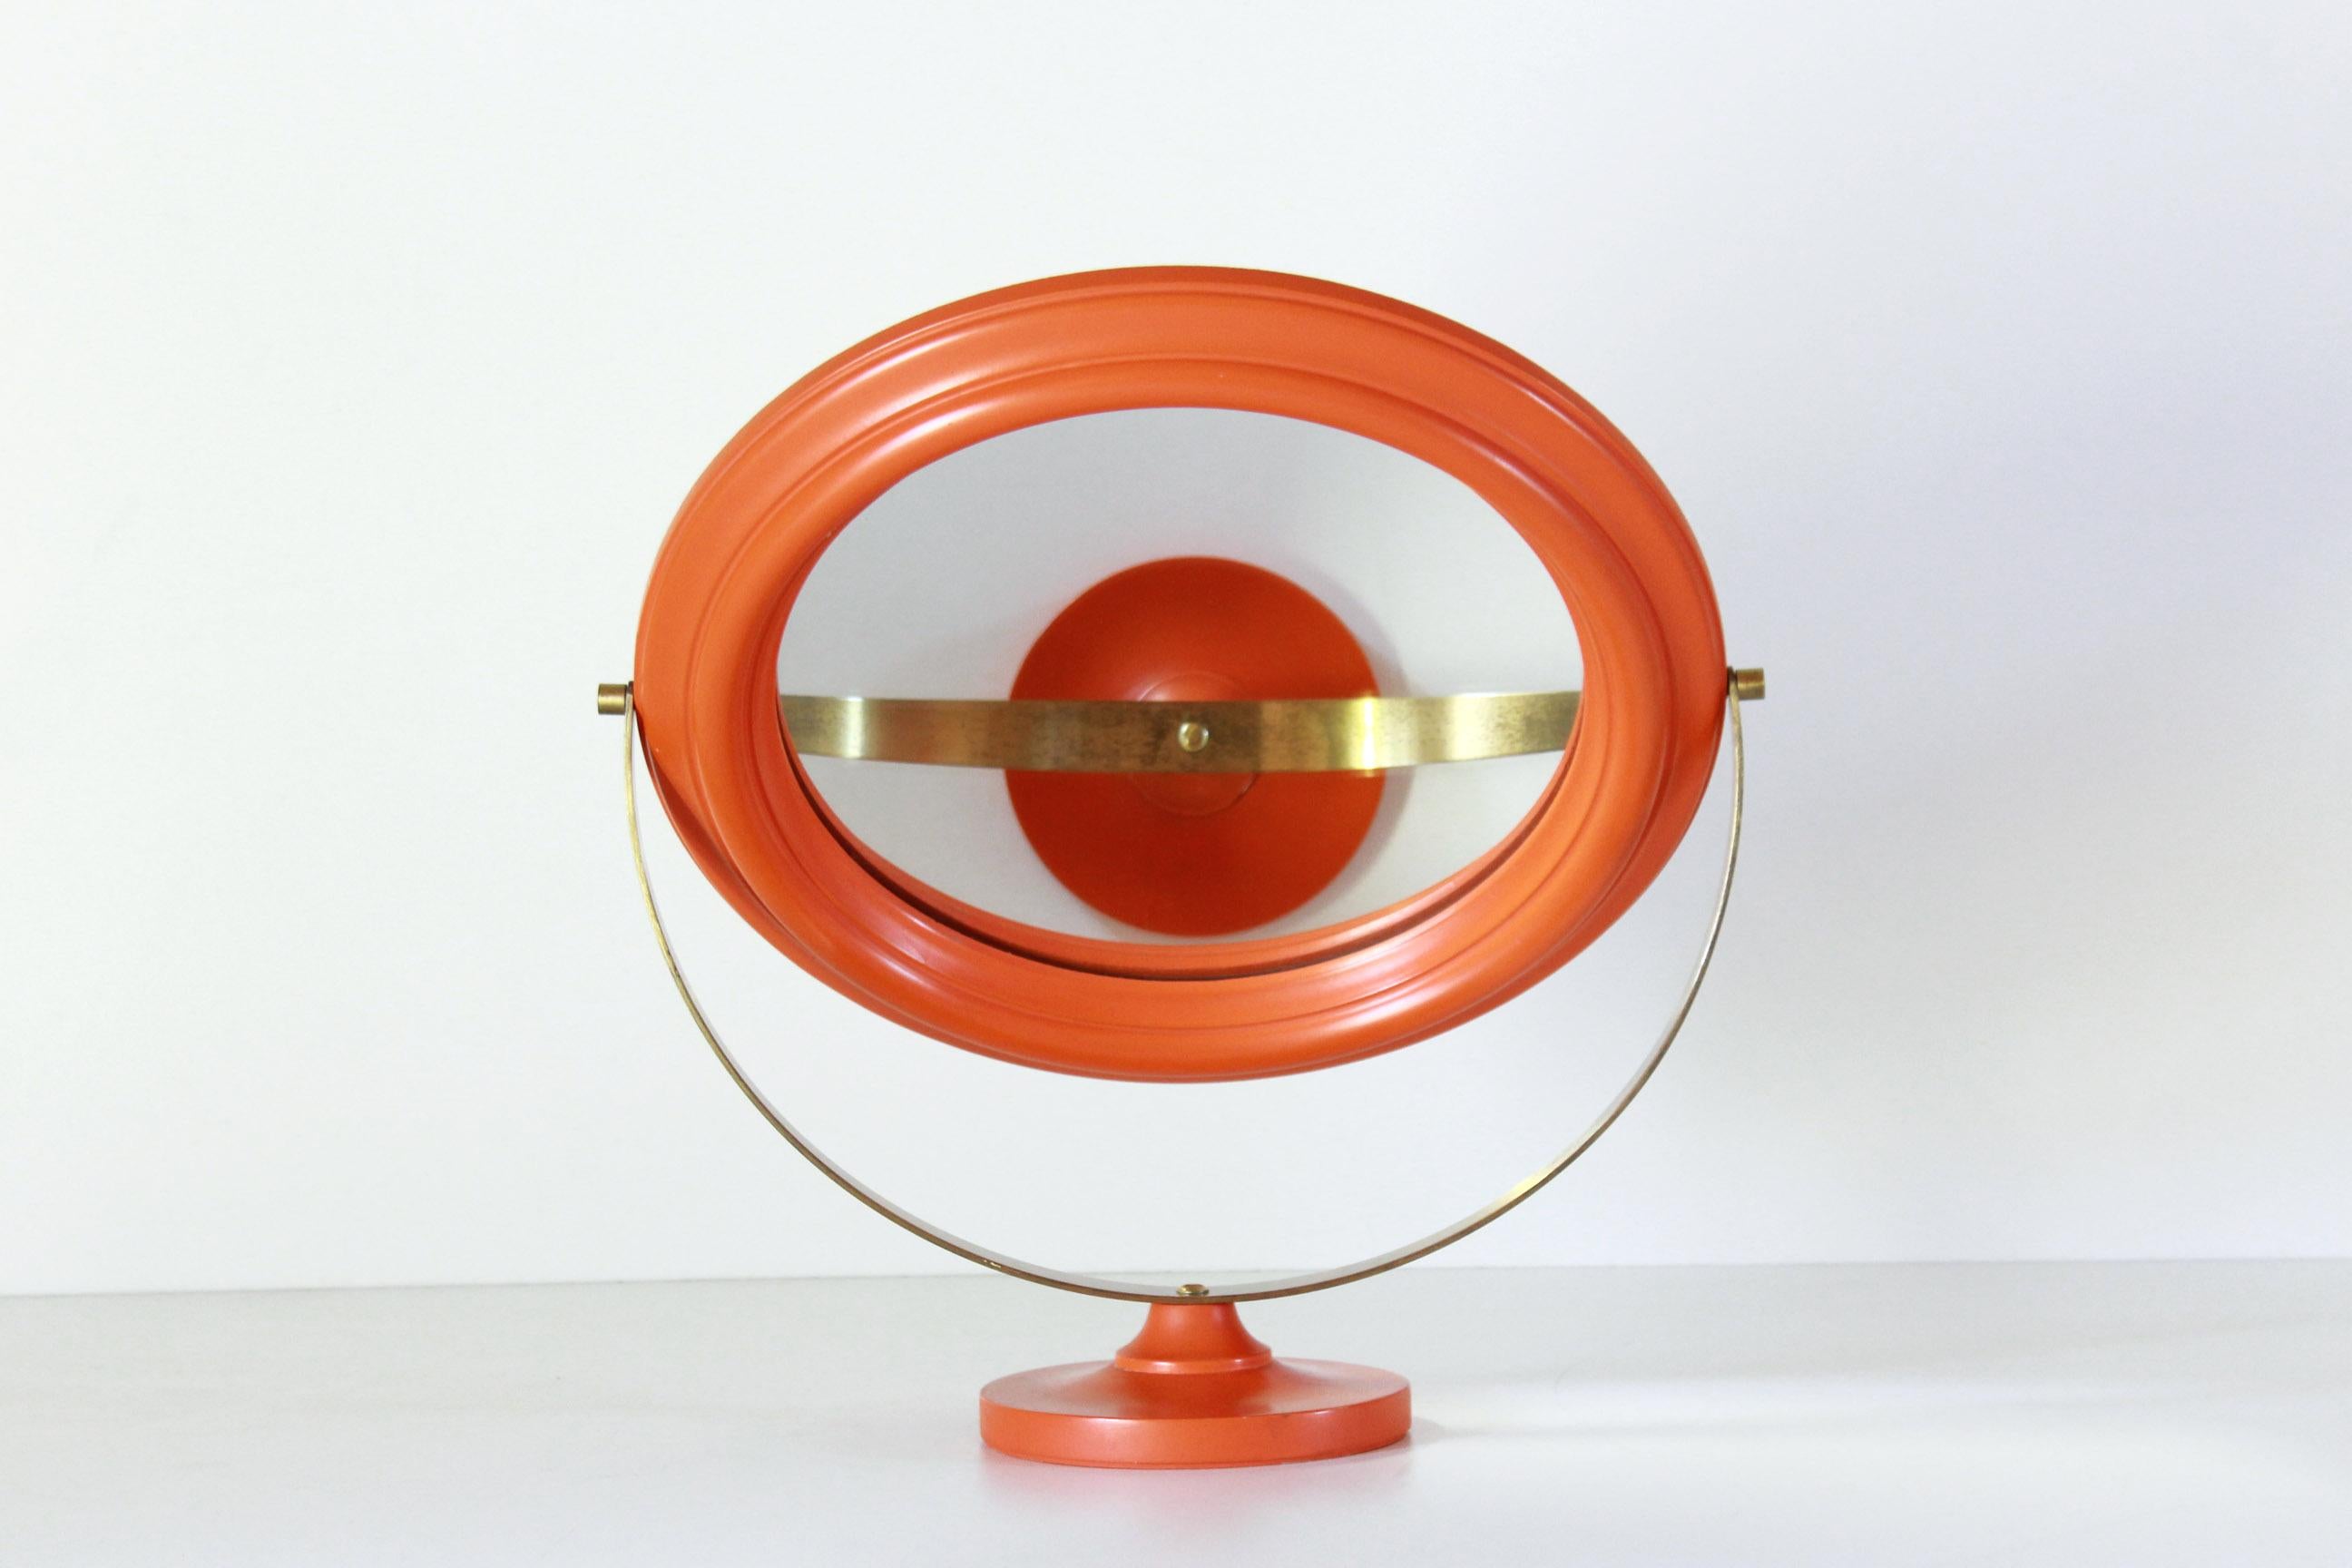 Vintage Tischspiegel mit orangefarbenem Holzrahmen und Messingsockel, Italien 1960er Jahre
Ein gemütlicher Tischspiegel im Vintage-Stil, bestehend aus einer Messingstruktur und einem verstellbaren Holzrahmen. In sehr gutem Zustand mit nur wenigen